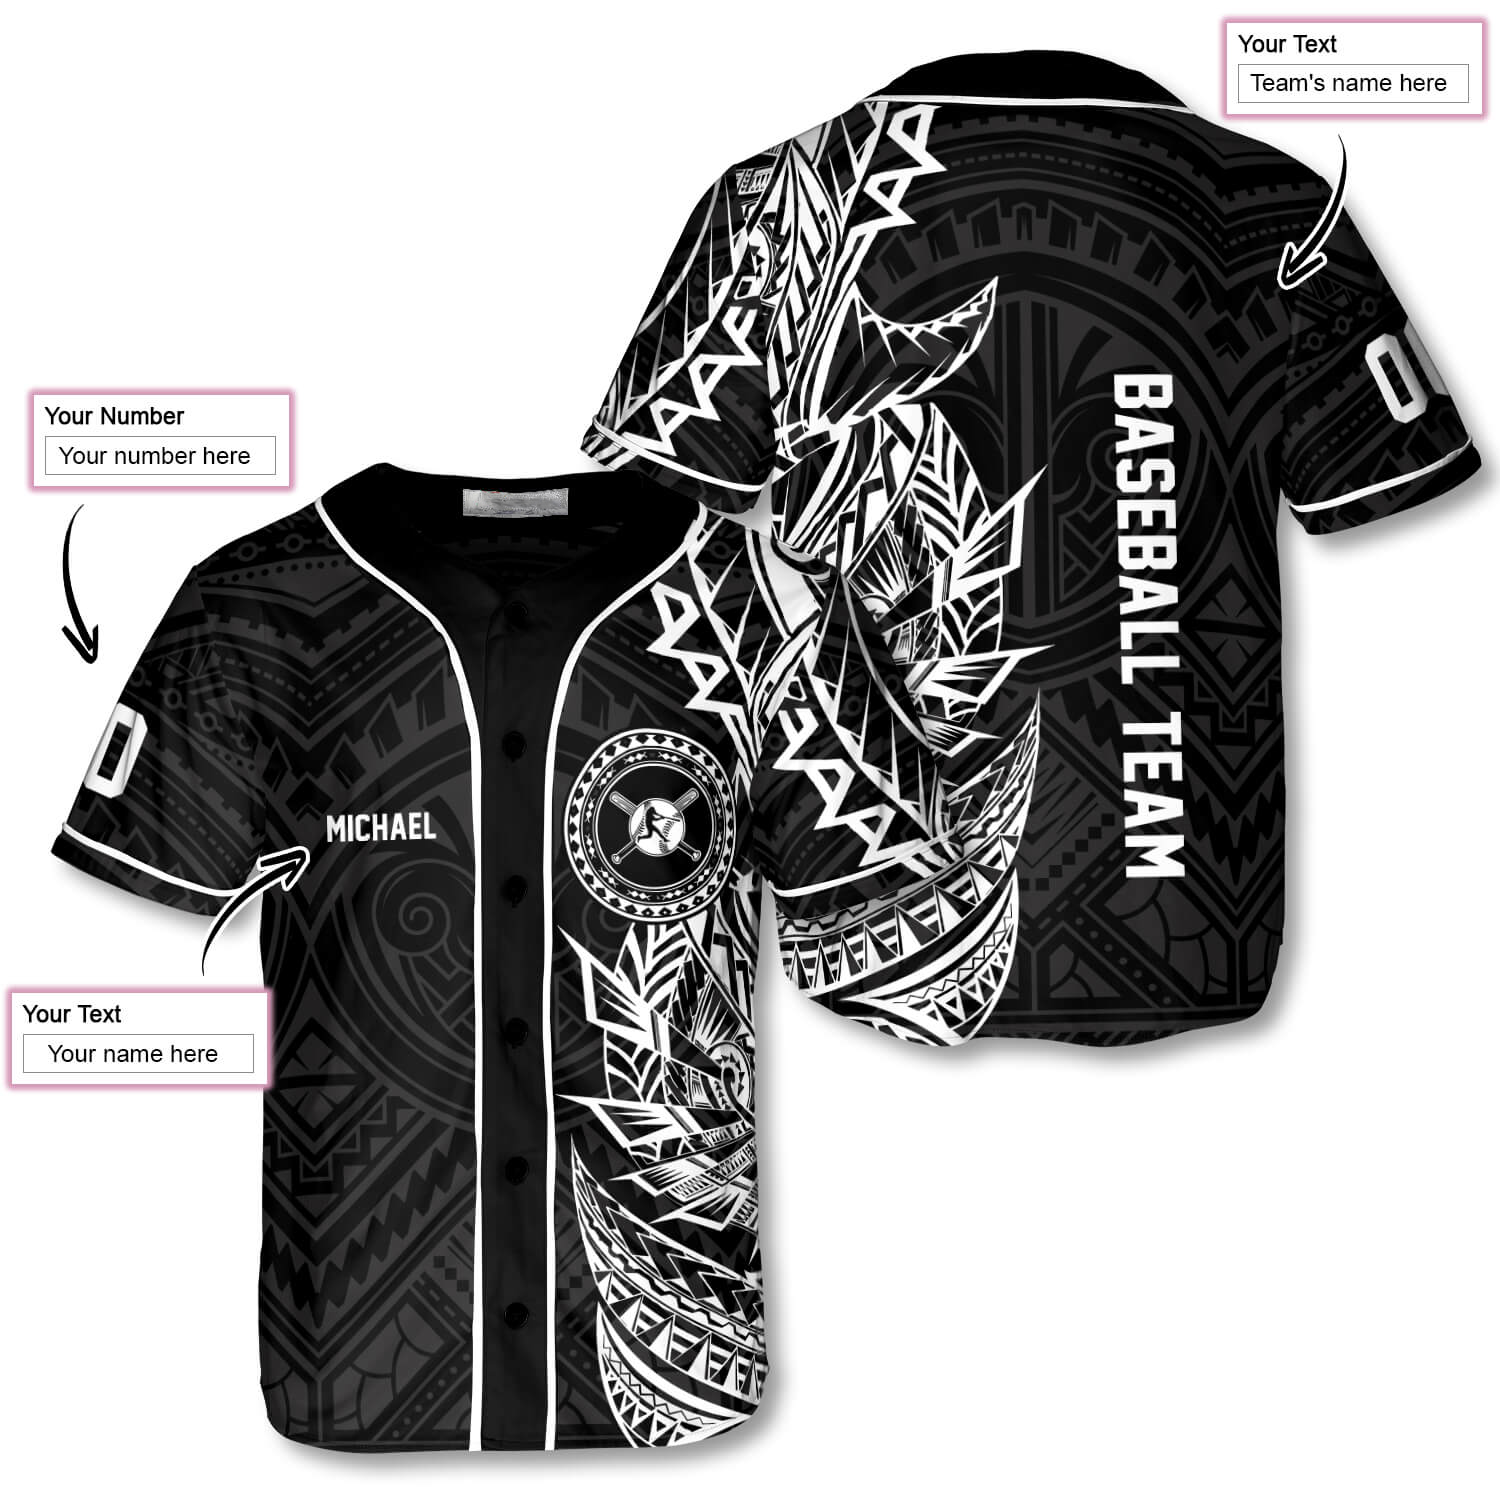 Athlete BW Tribal Custom Baseball Jersey/ Best Shirt for Baseball Lover/ Gift for Men